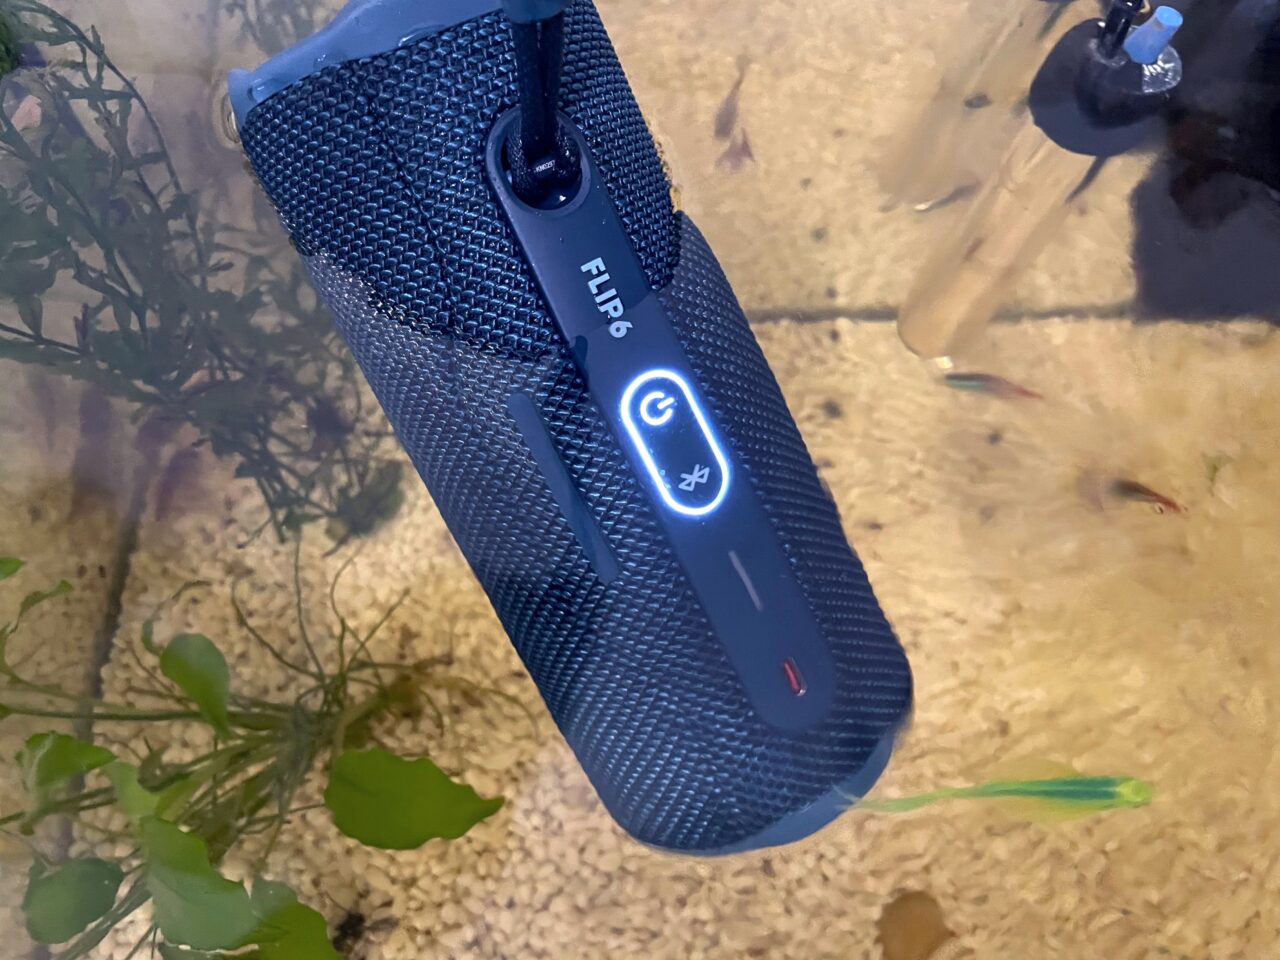 Czarny, przenośny głośnik Bluetooth marki JBL Flip zawieszony nad powierzchnią wody, w tle widoczne rośliny wodne i małe rybki.